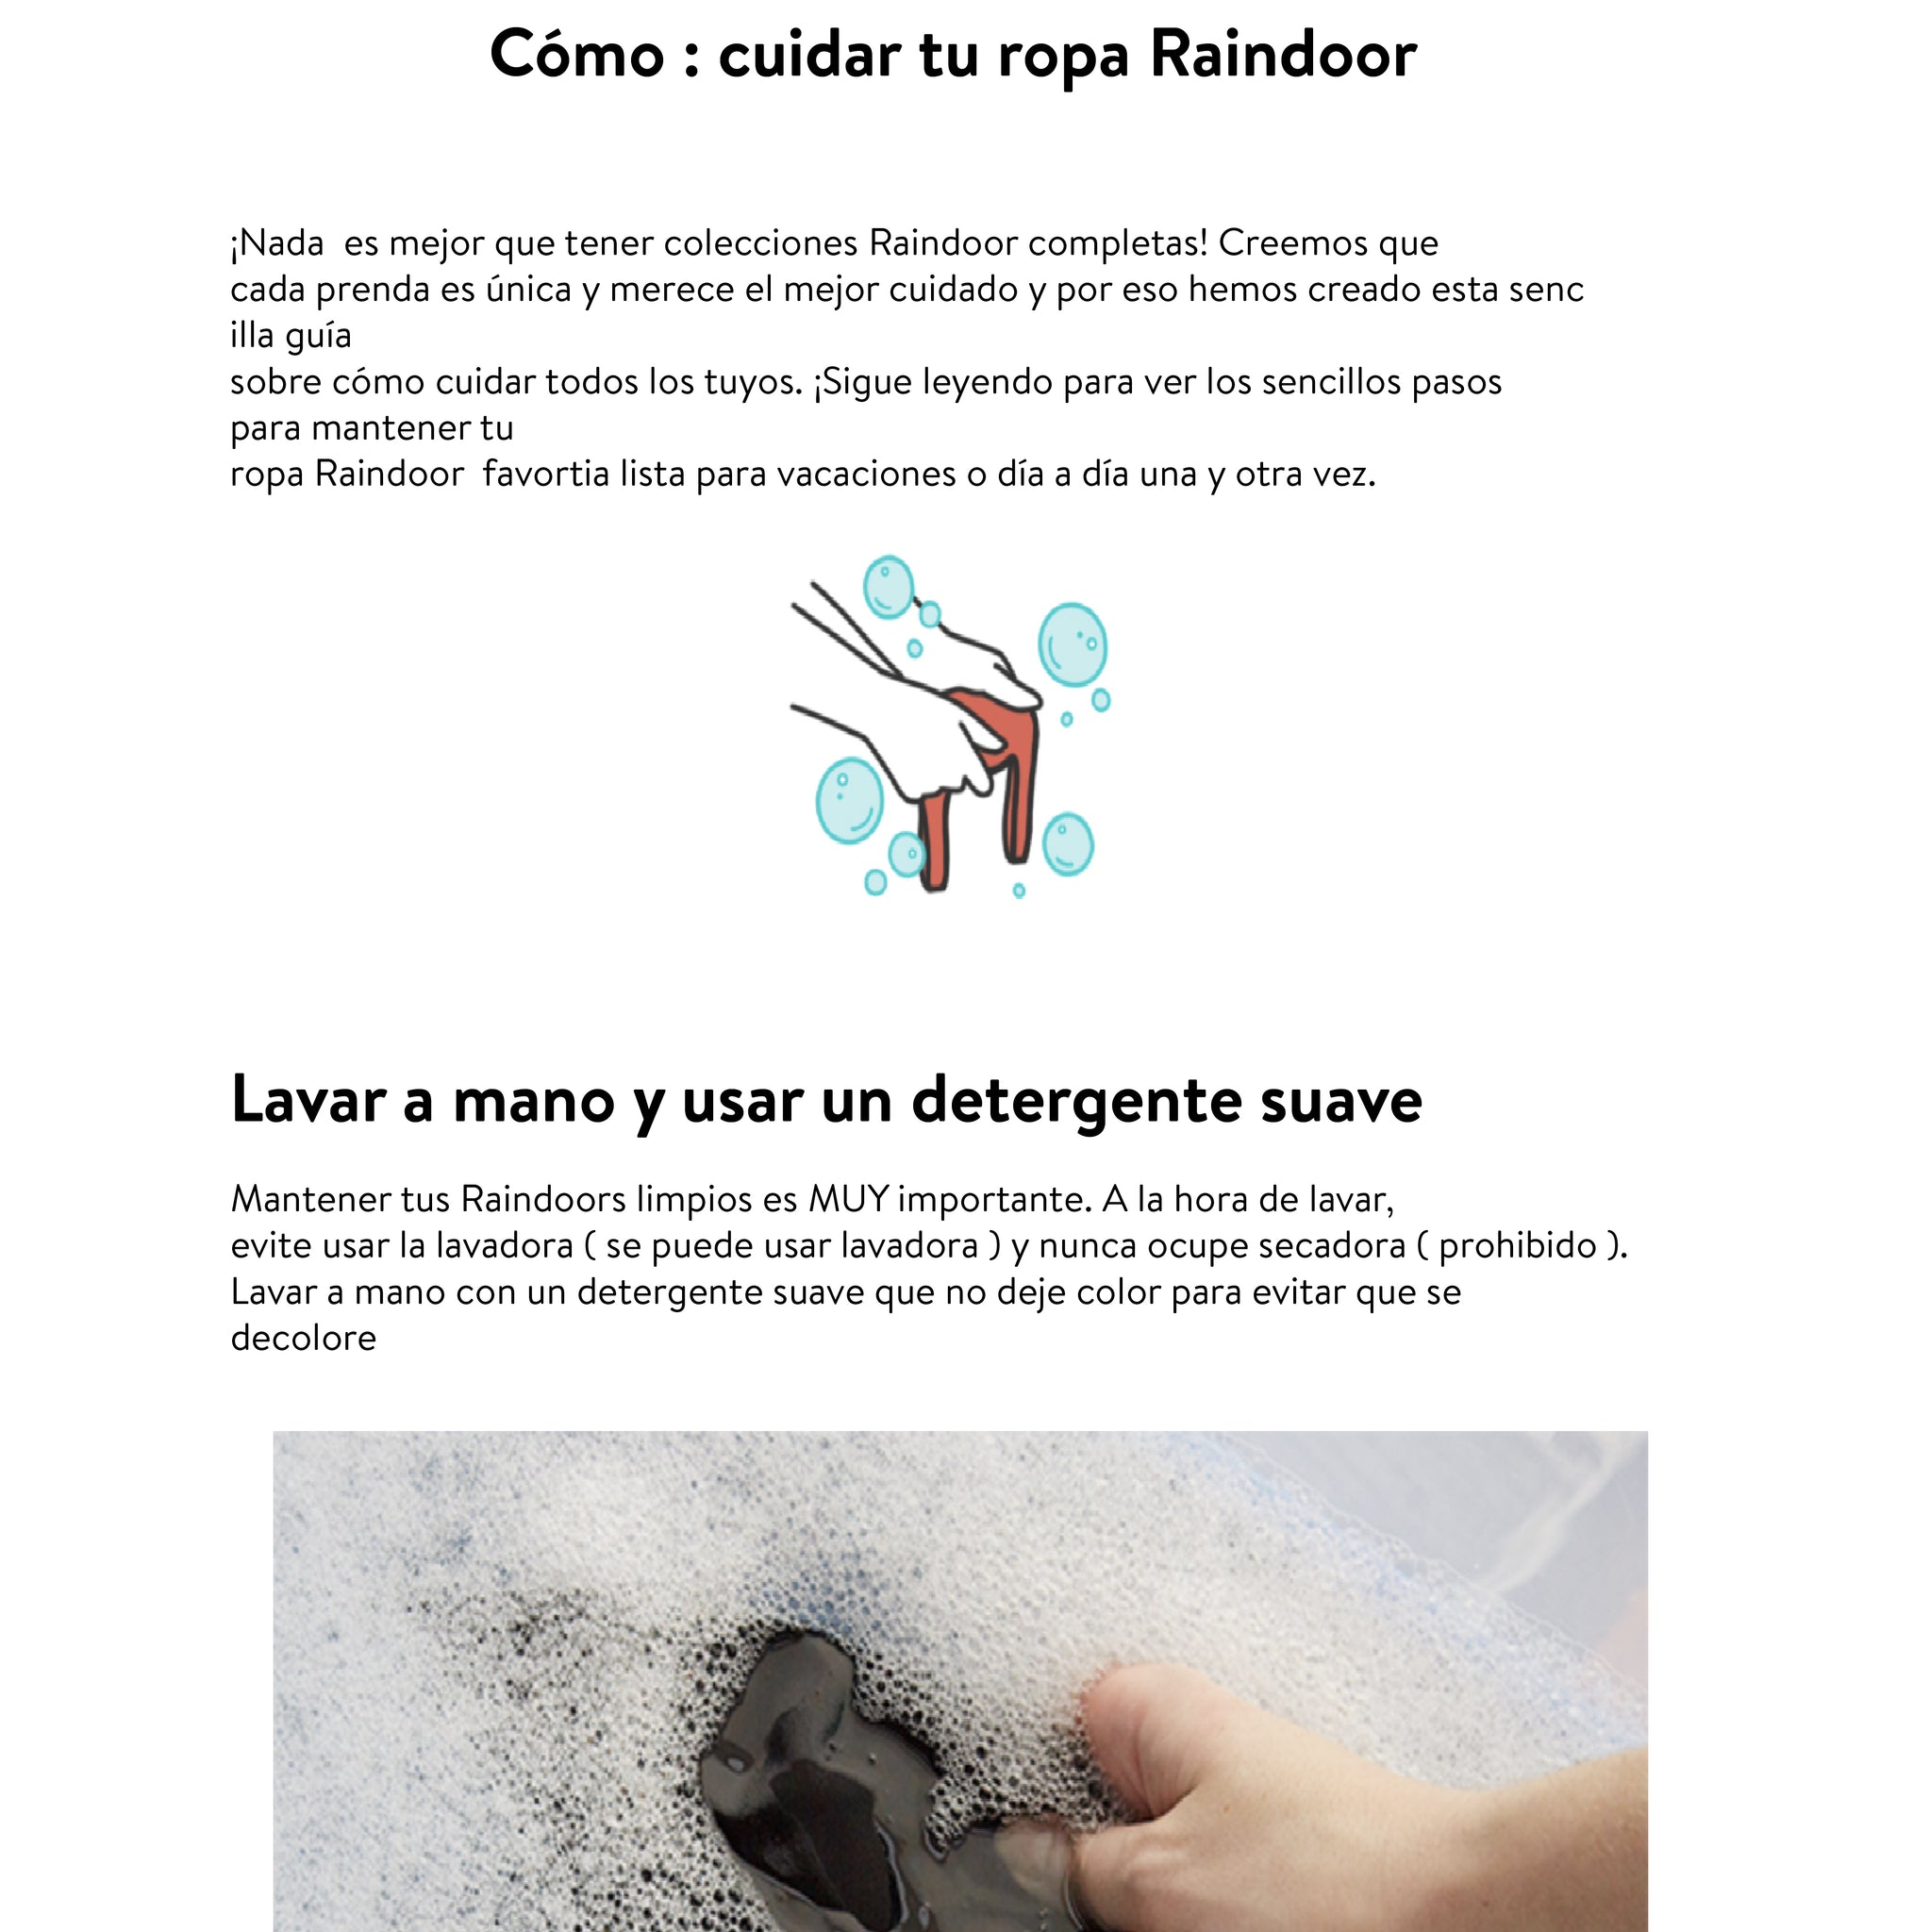 Cómo lavar ropa de color - Ver guía